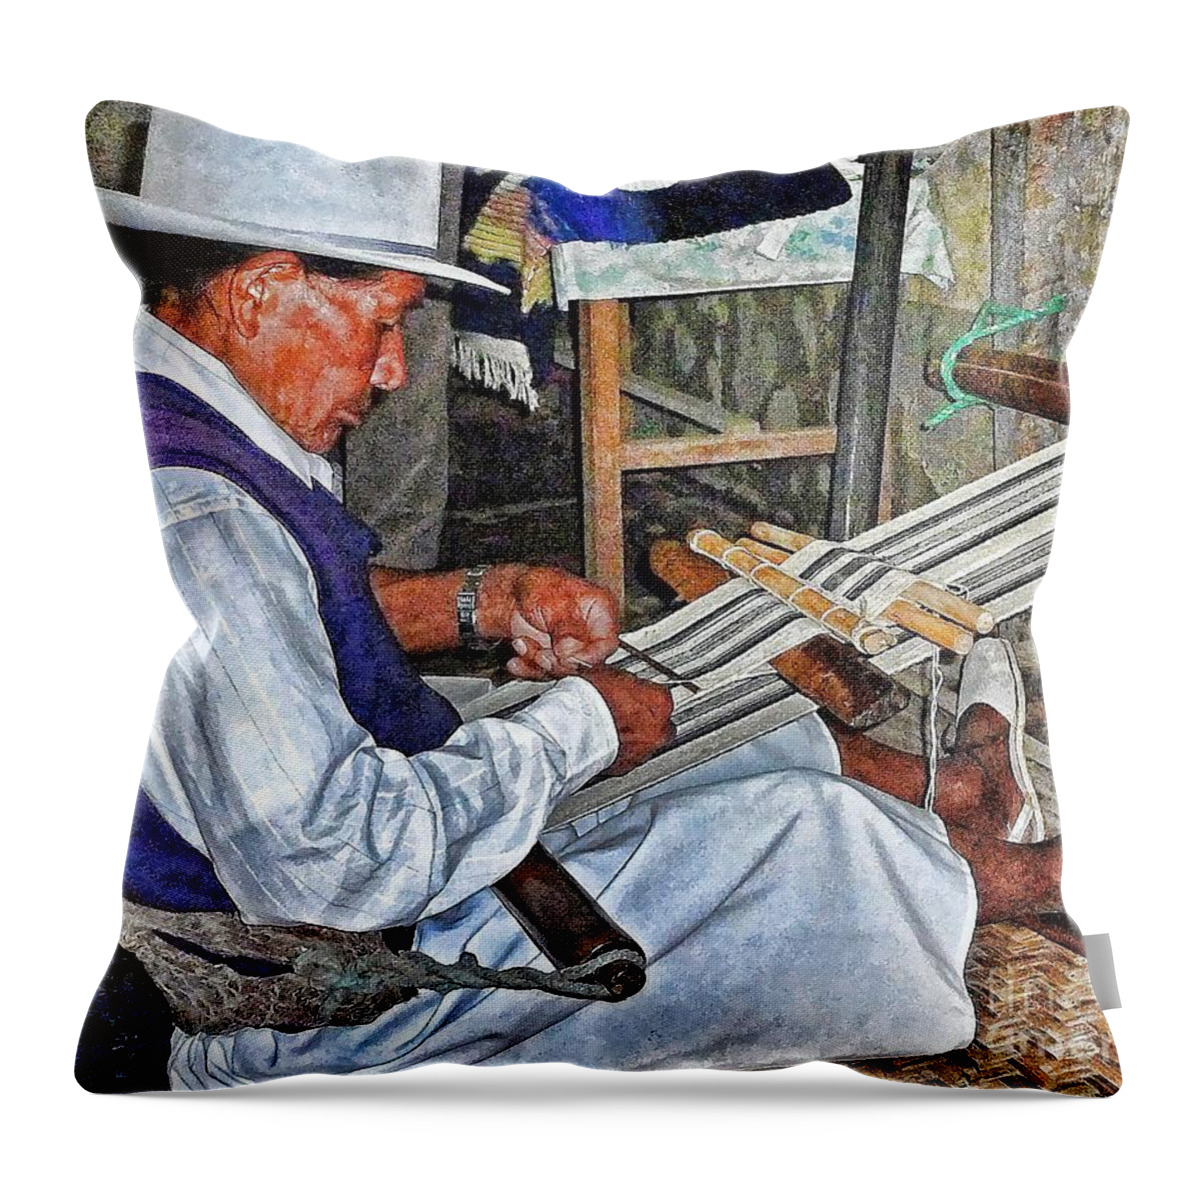 Julia Springer Throw Pillow featuring the photograph Backstrap loom - Ecuador by Julia Springer